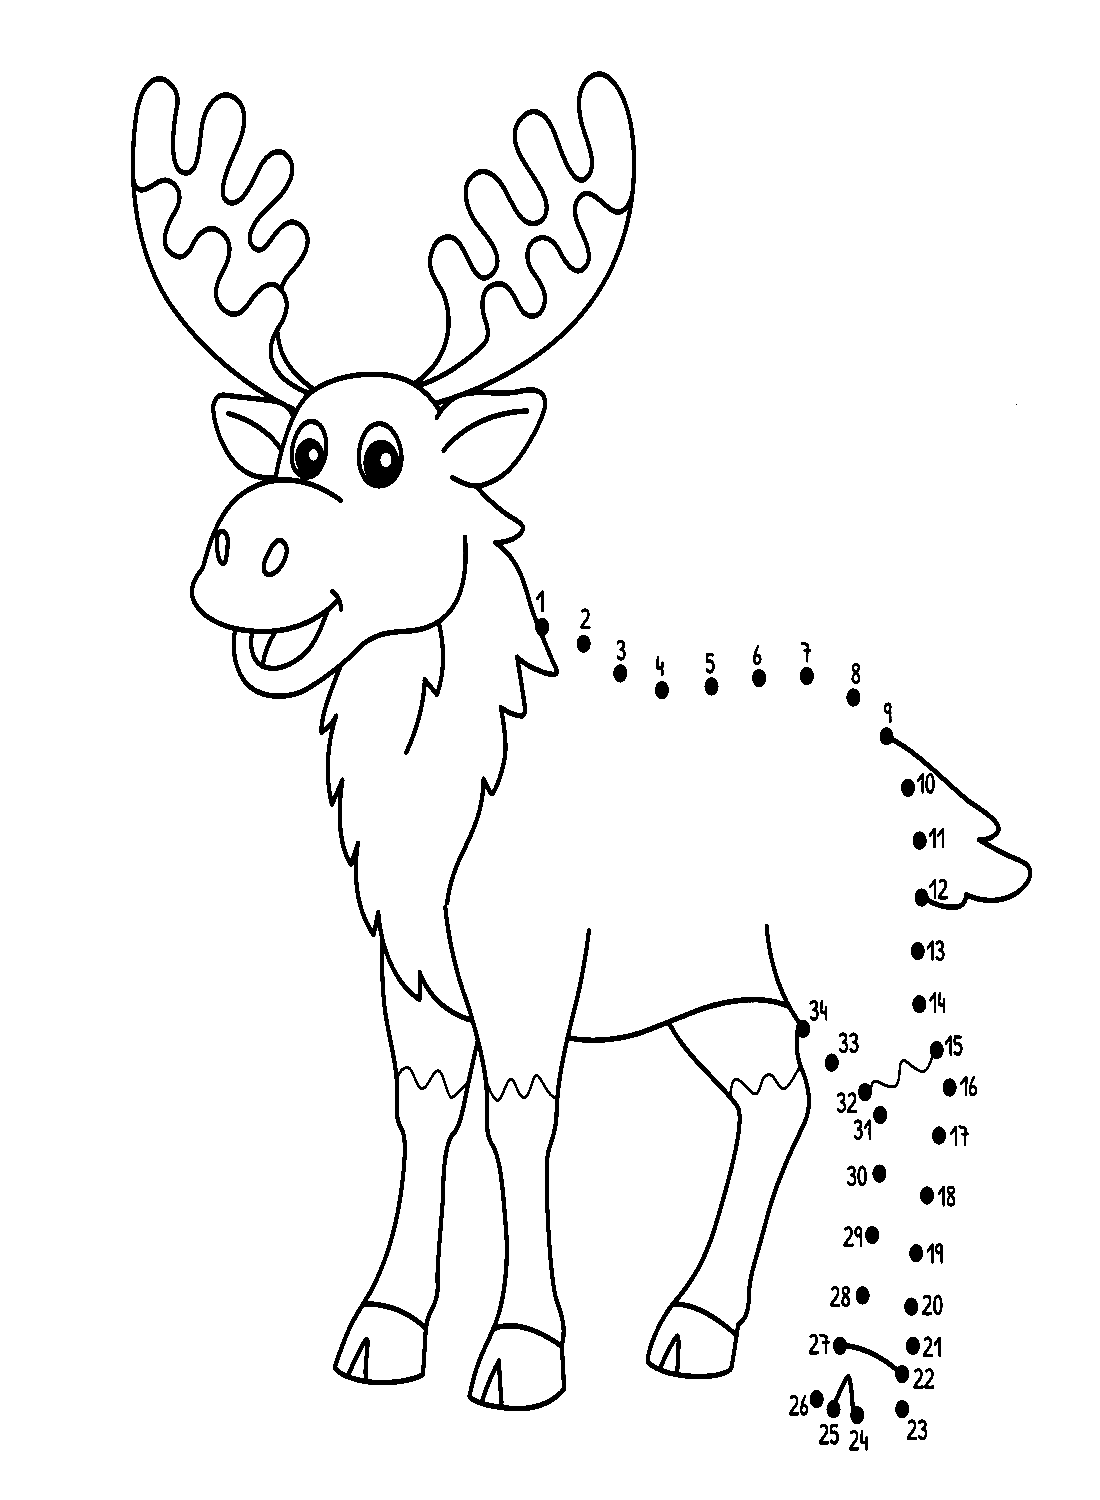 Punto a punto Alce de Elk